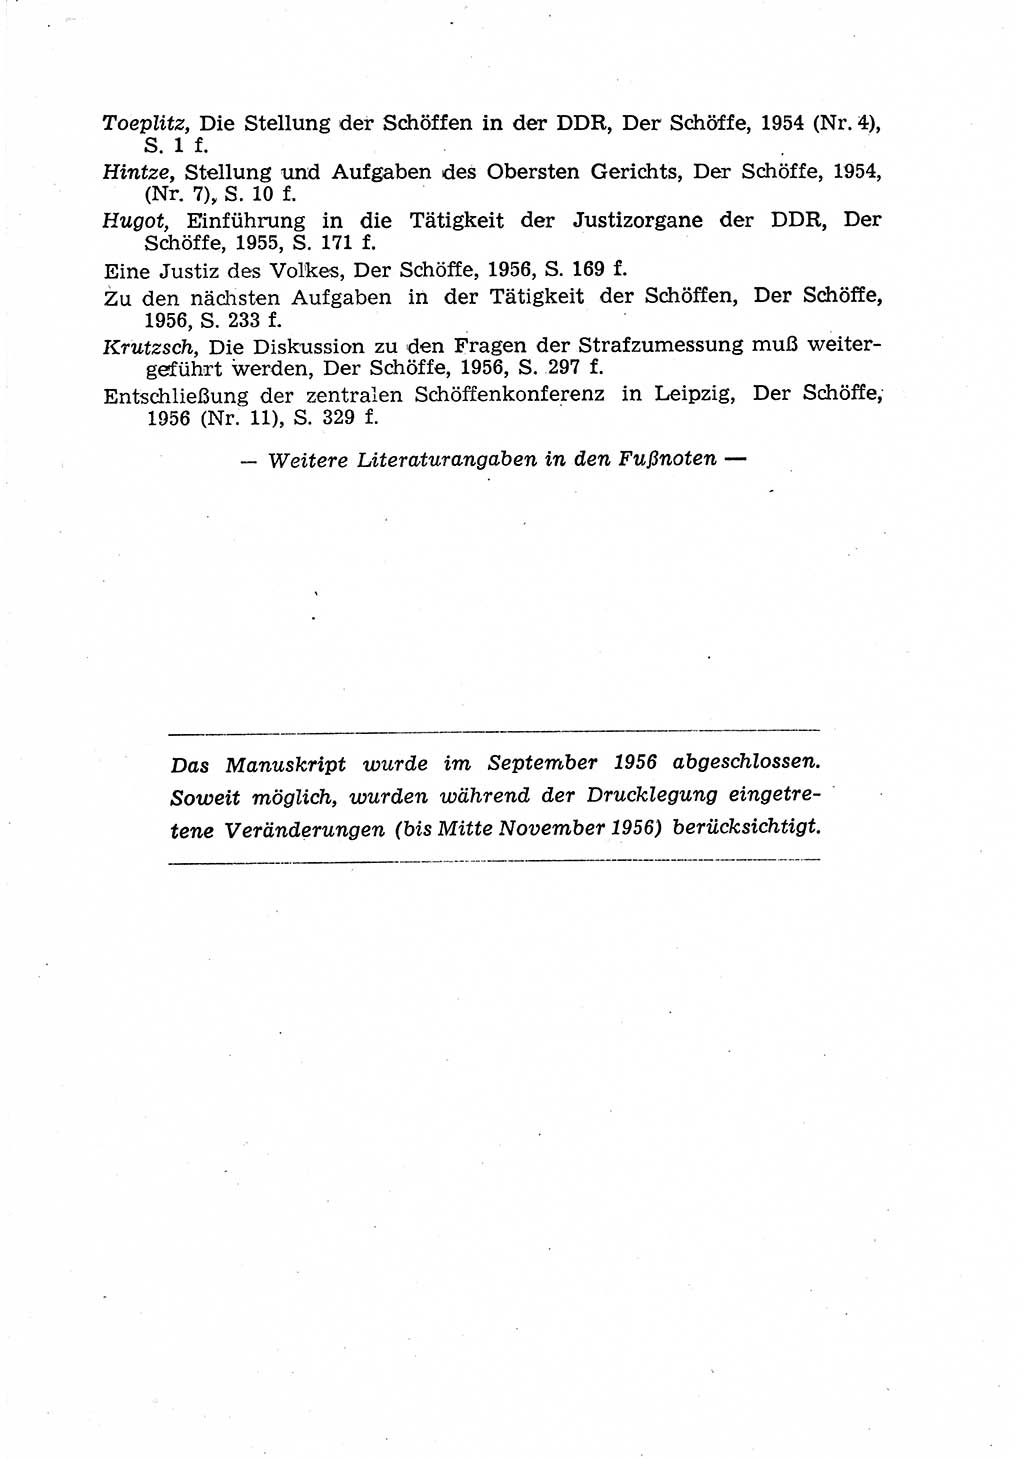 Gericht und Rechtsprechung in der Deutschen Demokratischen Republik (DDR) 1956, Seite 63 (Ger. Rechtspr. DDR 1956, S. 63)